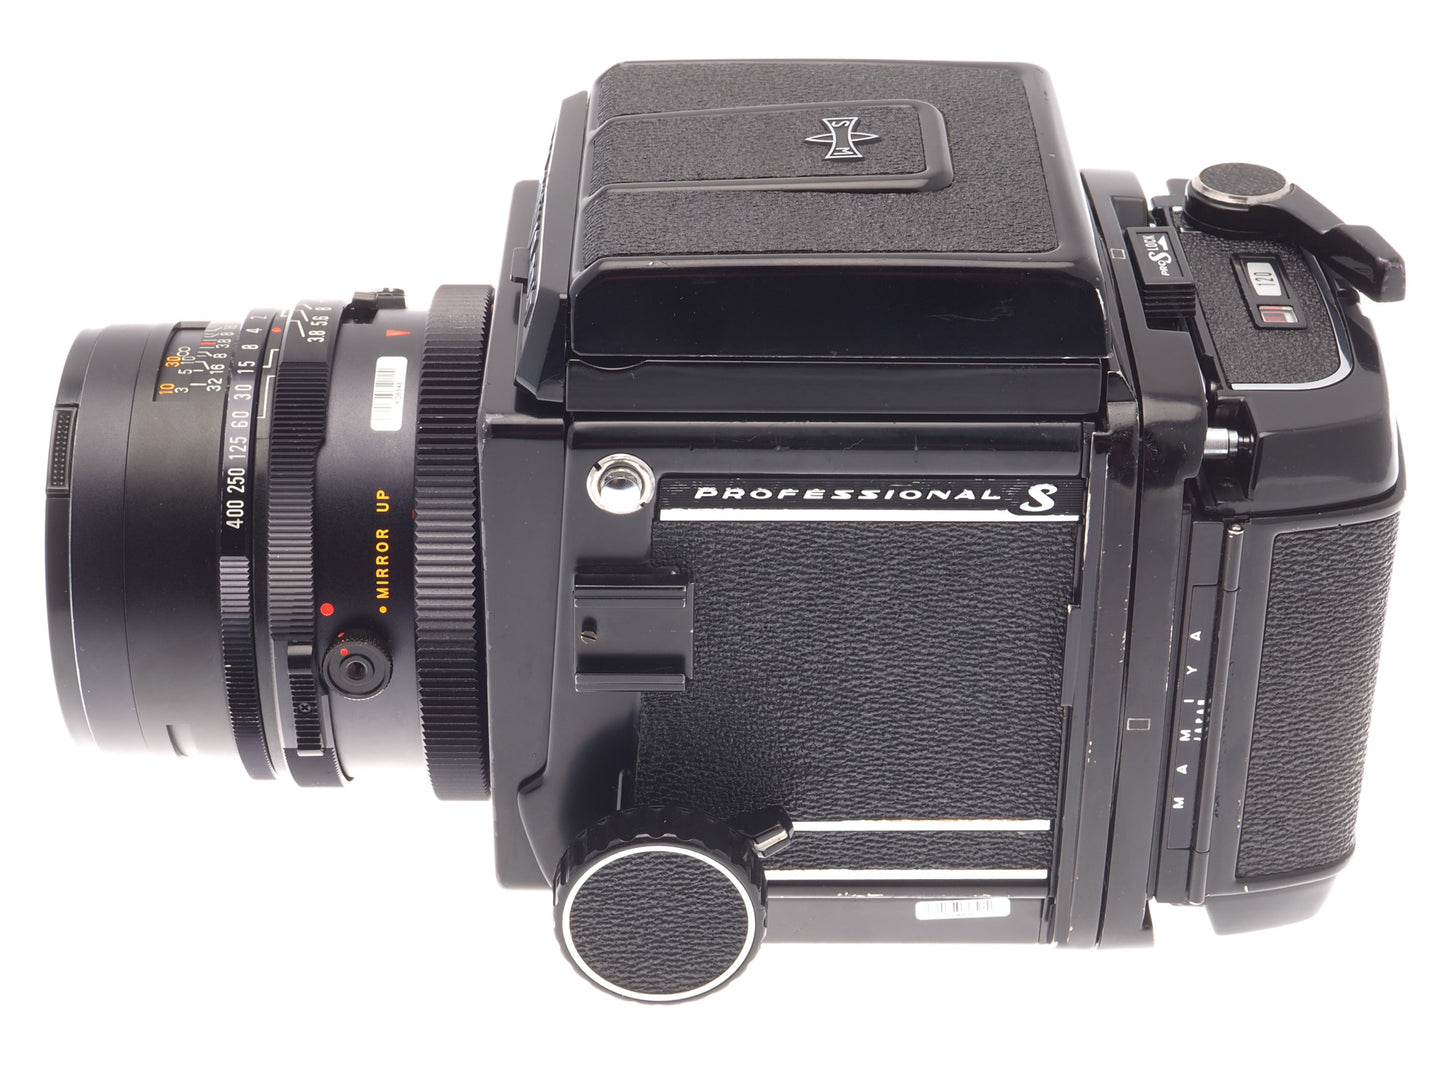 Mamiya RB67 Pro-S + 120 Pro-S 6x7 Film Back + 90mm f3.8 Sekor C + Waist Level Finder